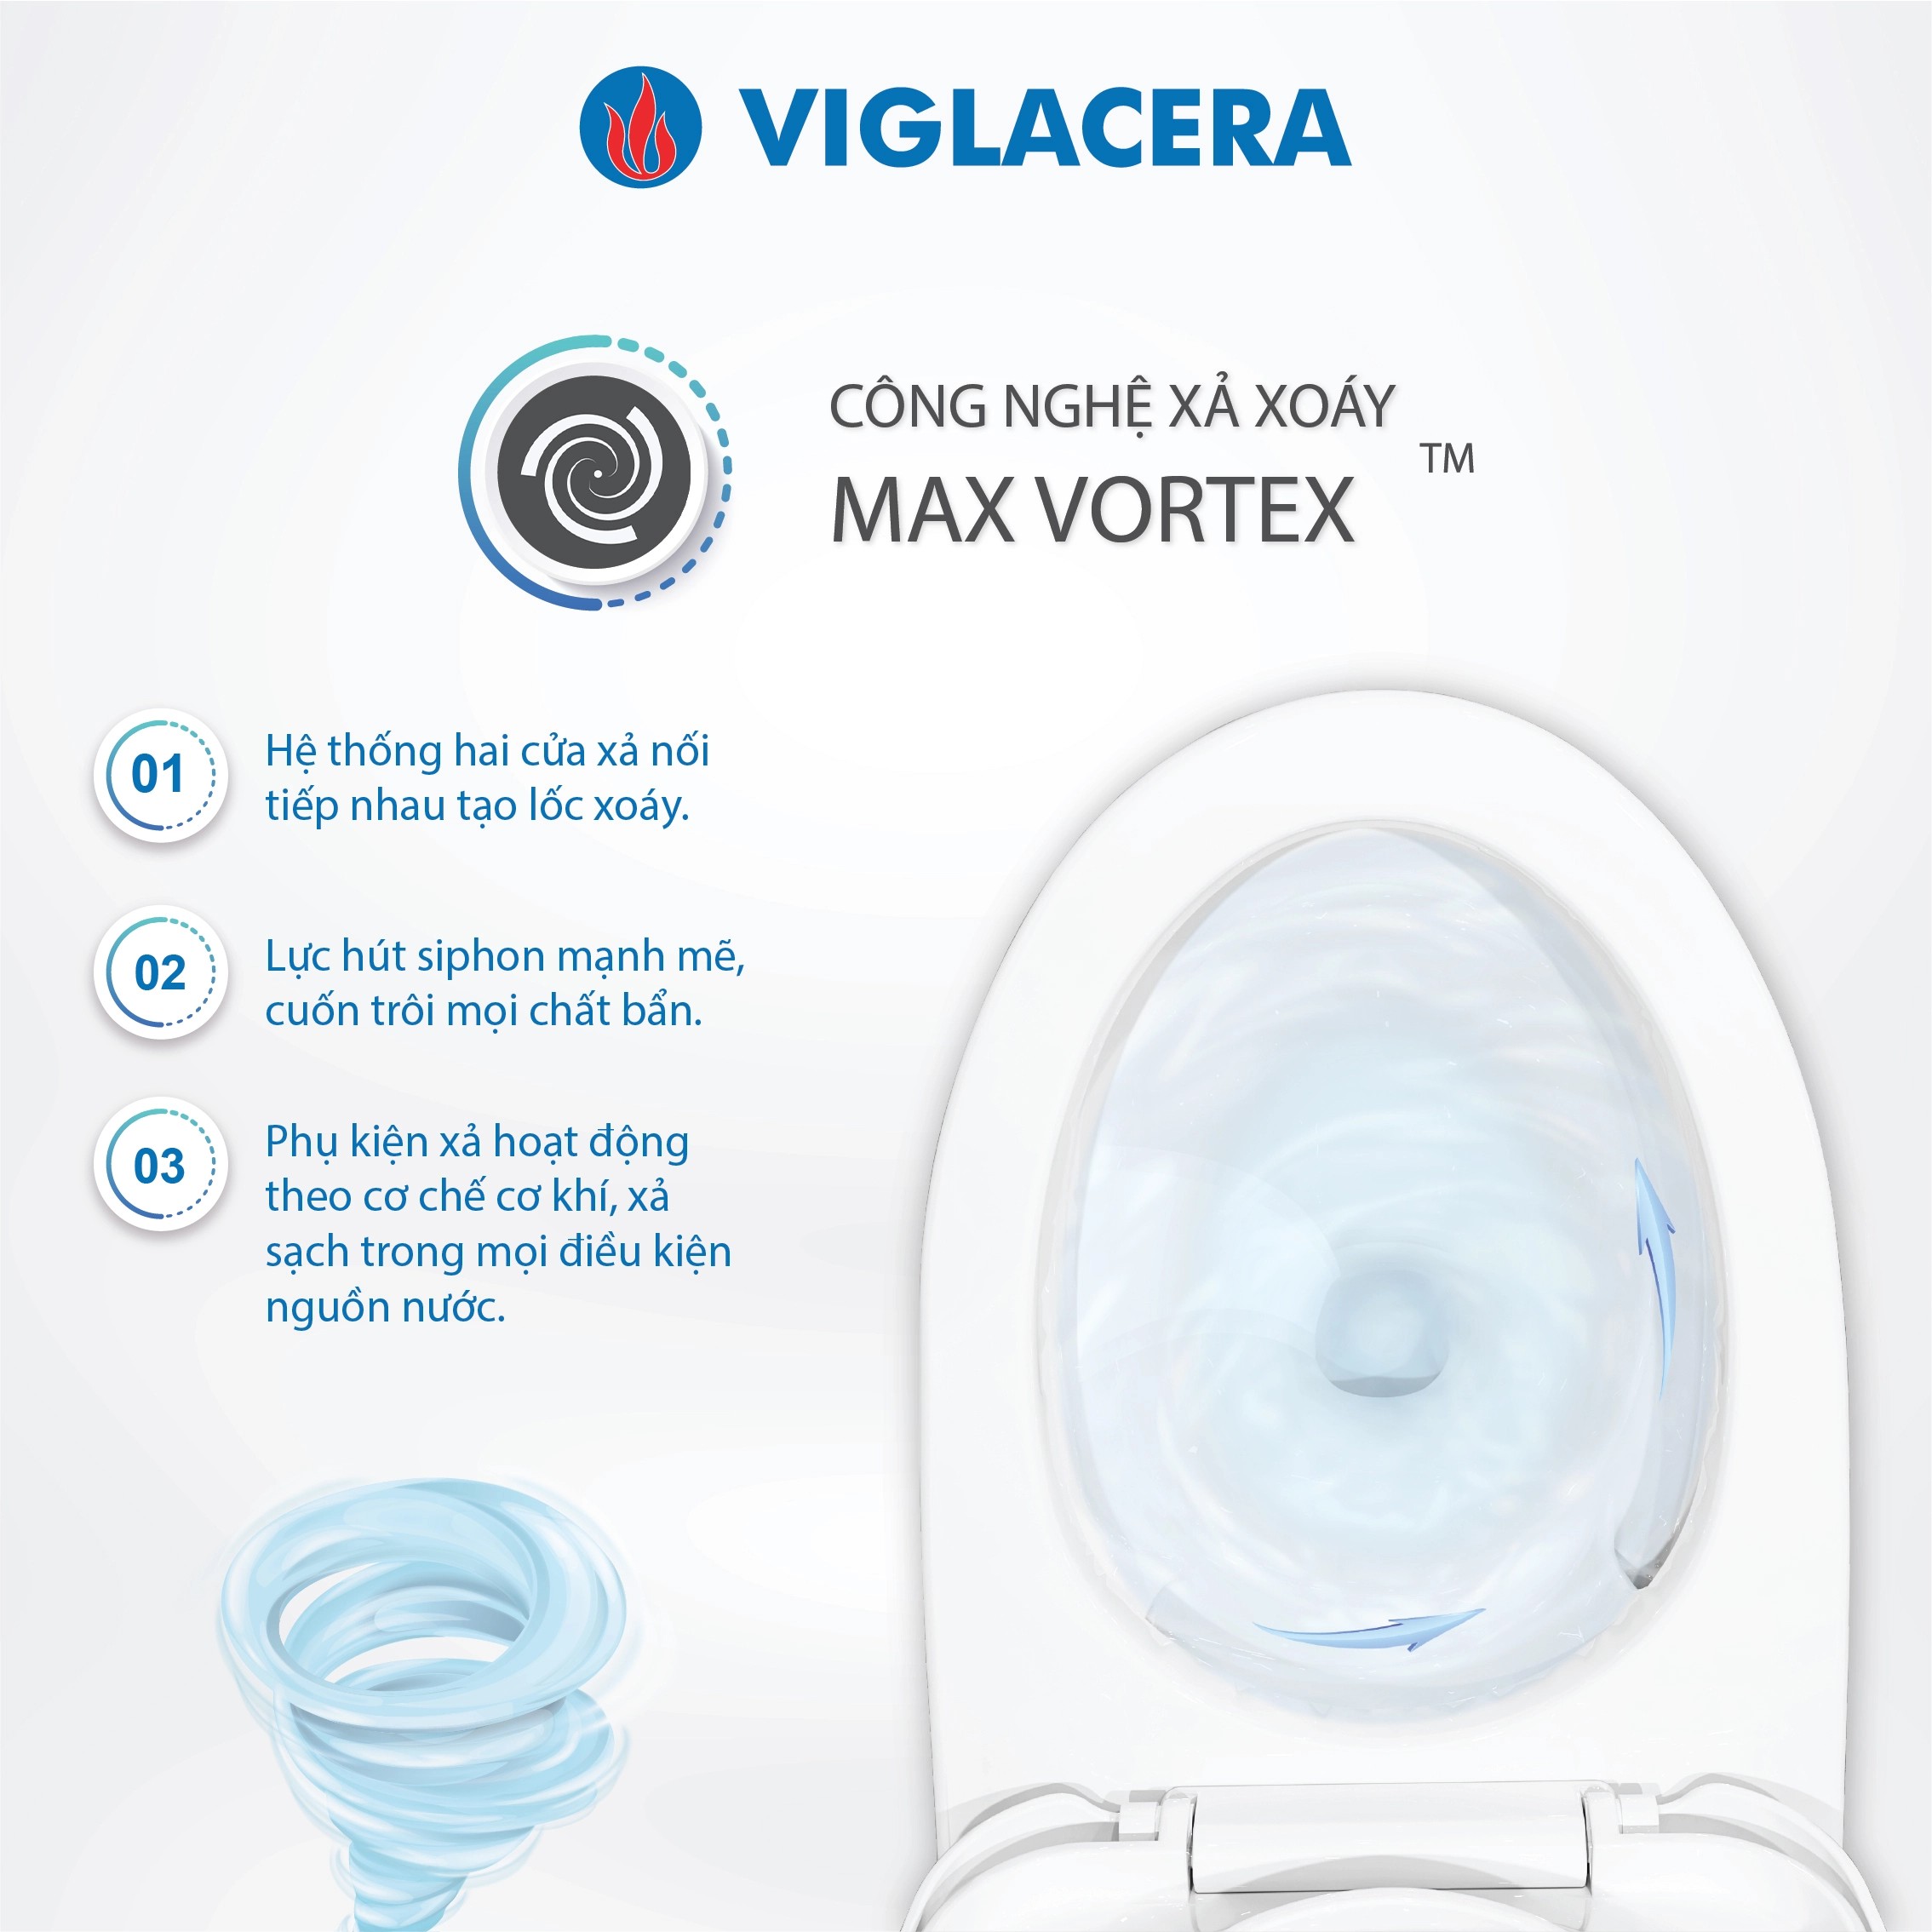 Công nghệ Max Vortex xả sạch triệt để trong mọi điều kiện nguồn nước